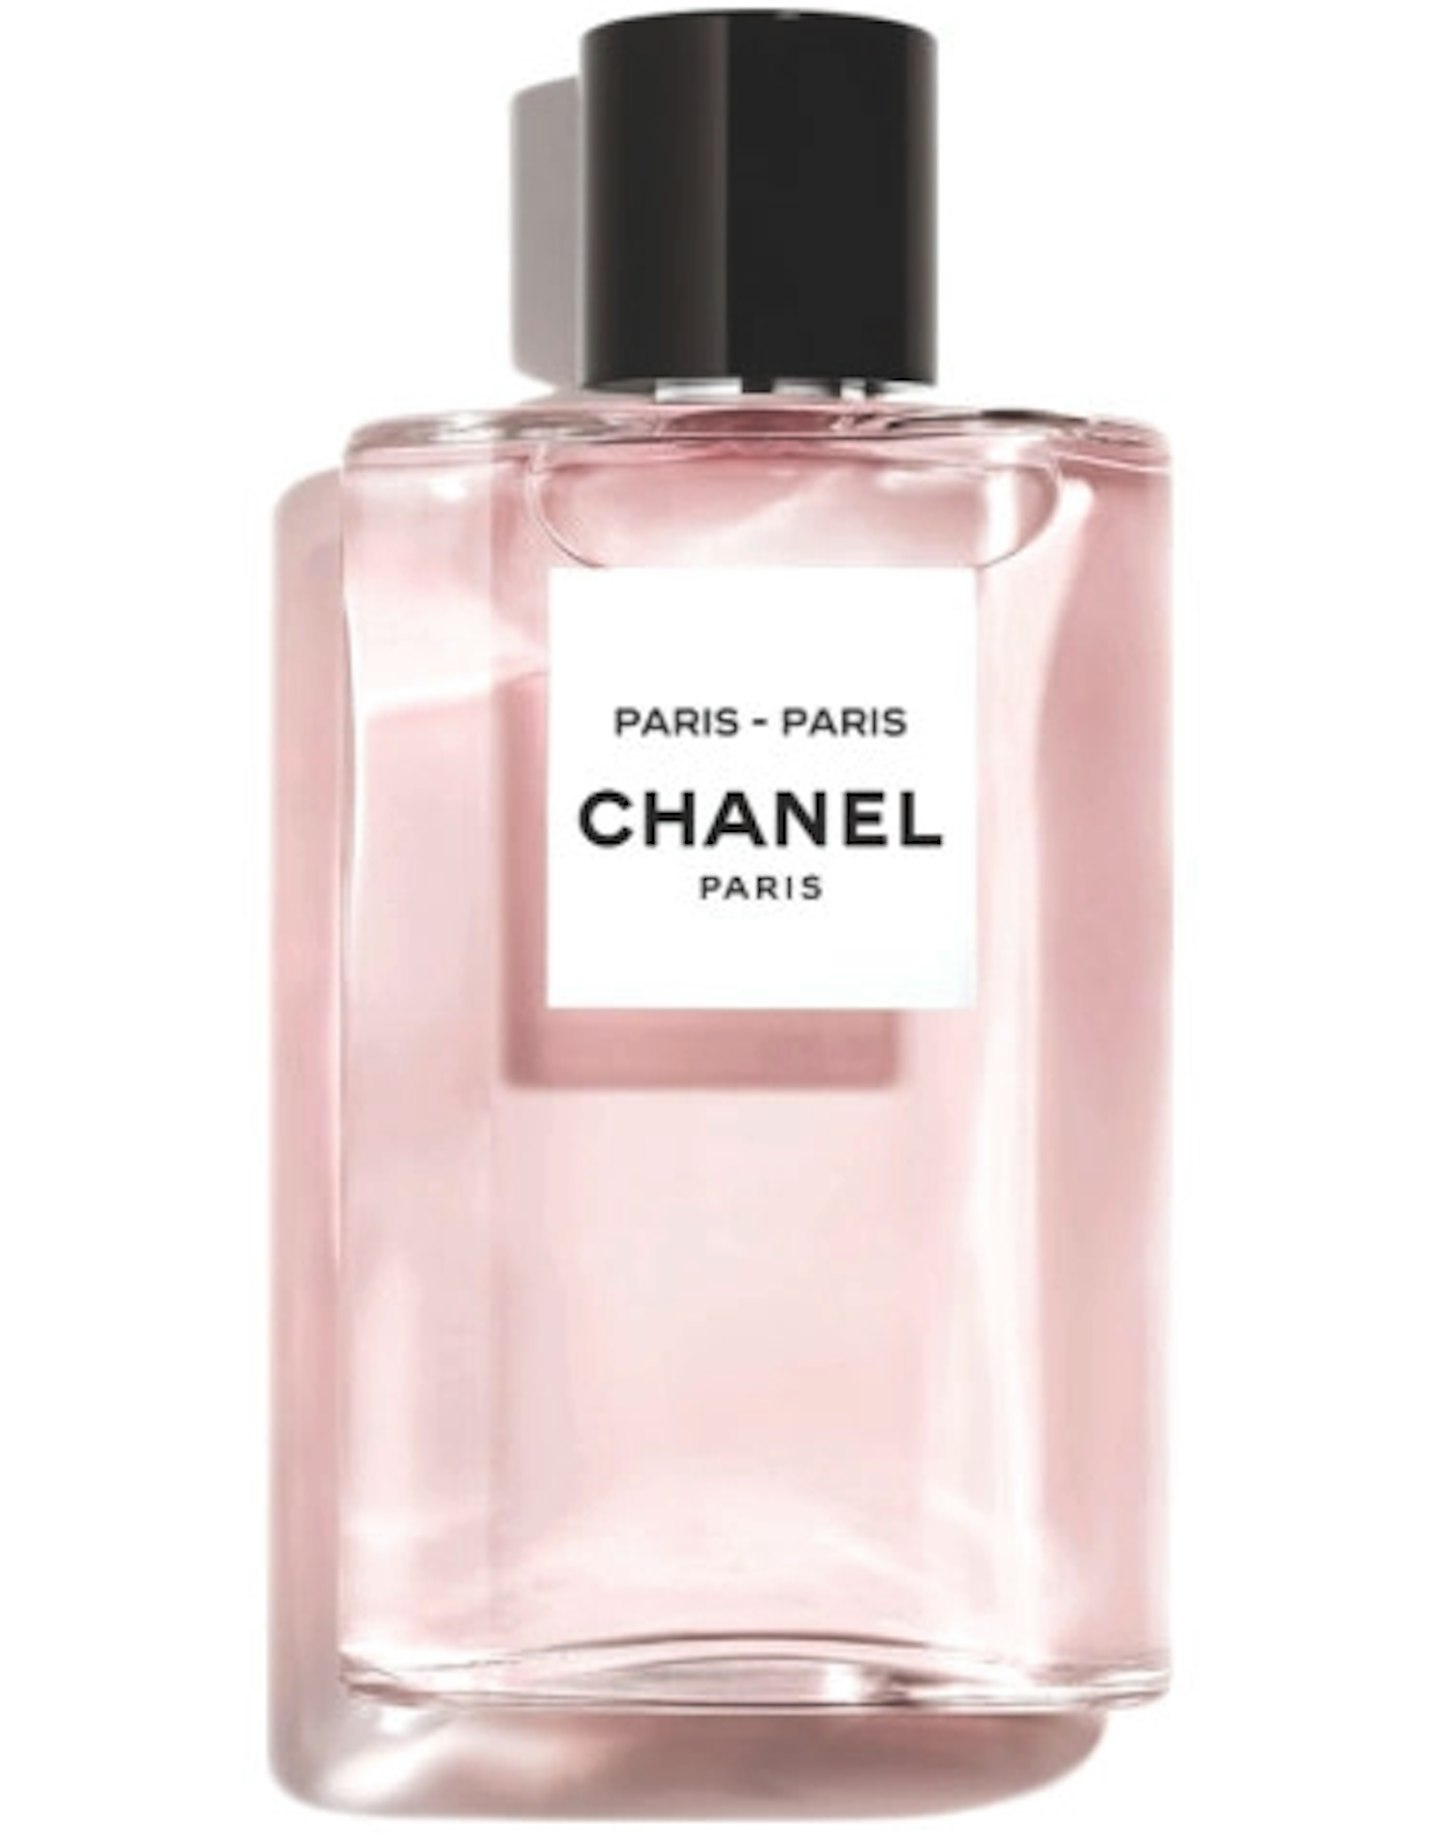 Chanel Paris-Paris Eau de Toilette